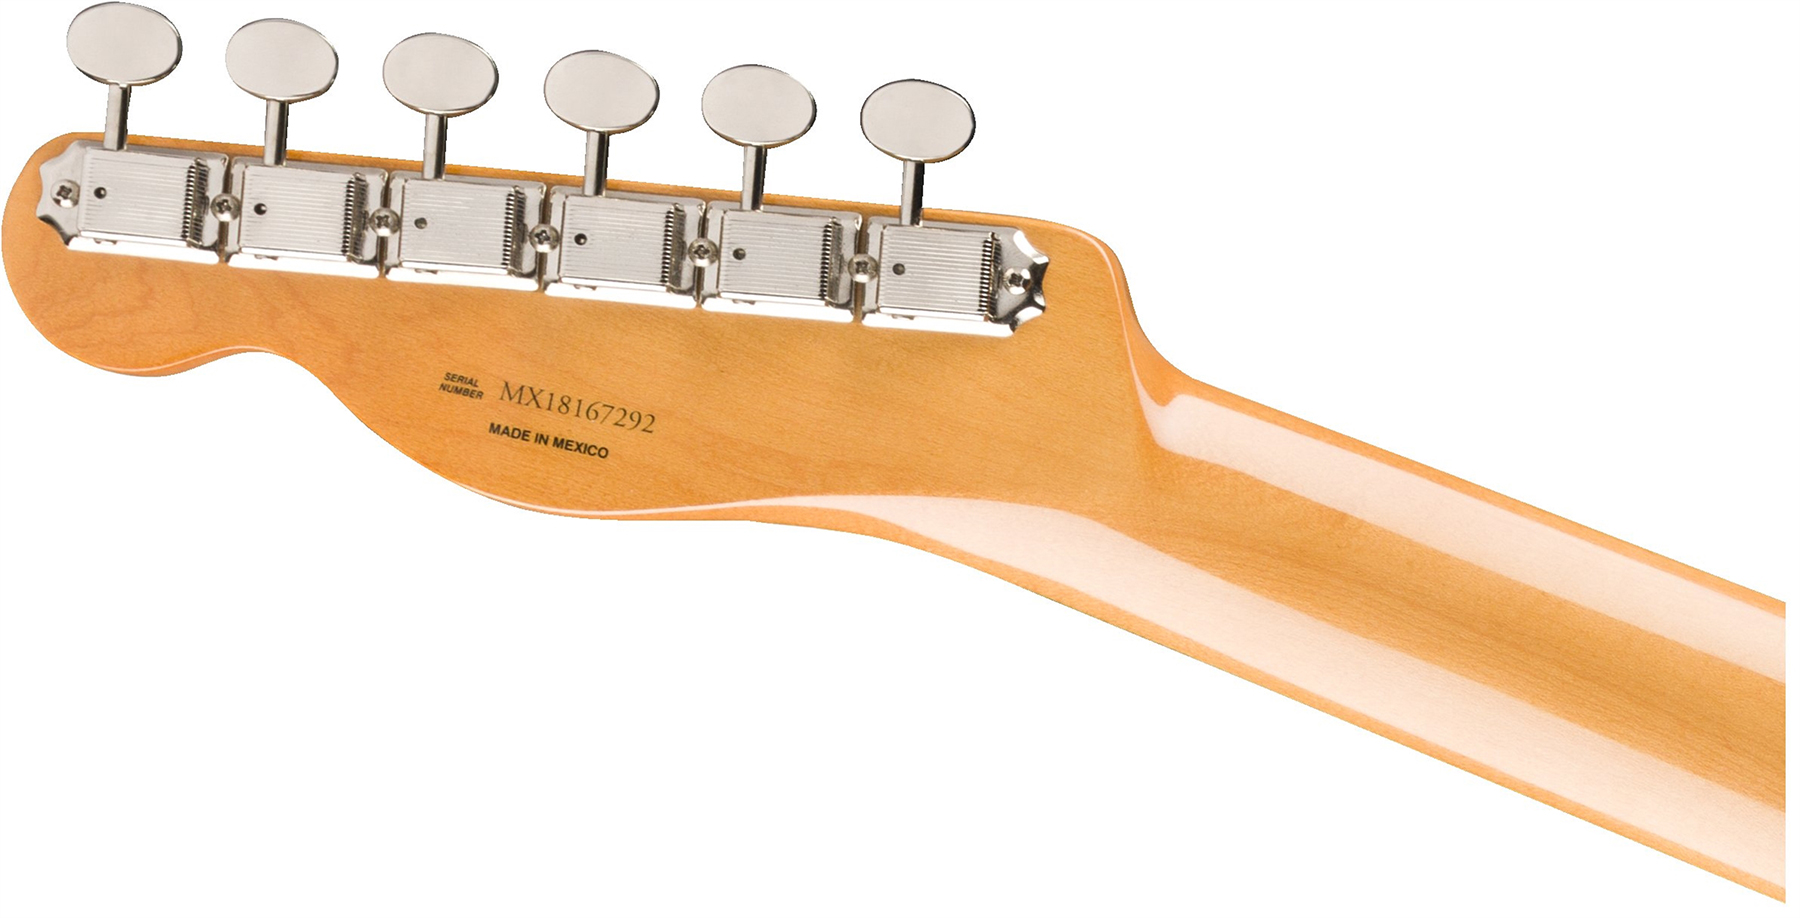 Fender Tele 60s Bigsby Vintera Vintage Mex Pf - 3-color Sunburst - Guitarra eléctrica con forma de tel - Variation 3